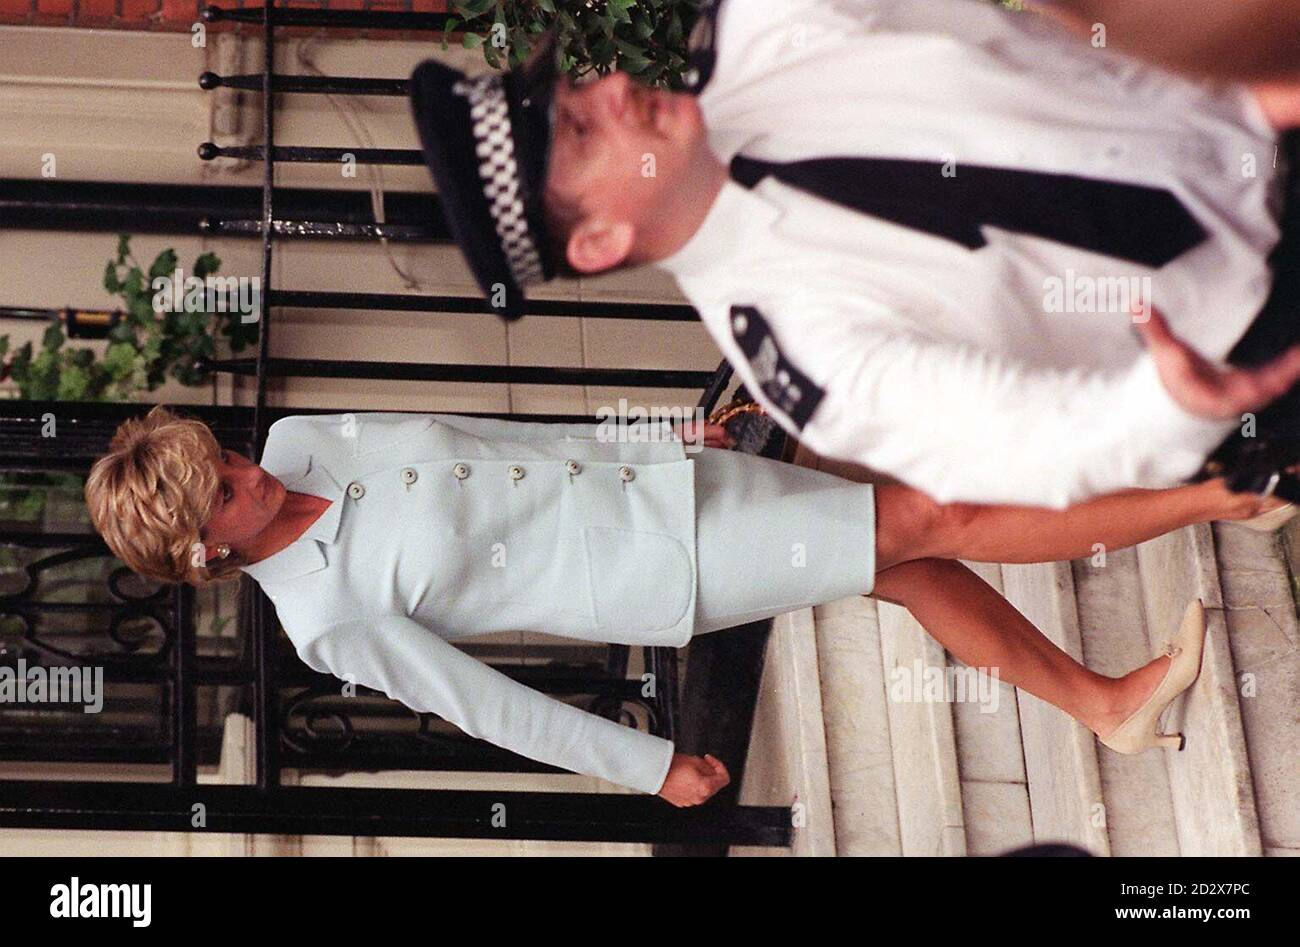 La princesse de Galles quitte l'hôtel Dukes à Londres aujourd'hui (vendredi), après l'annonce qu'elle avait accepté les conditions de son divorce avec le prince de Galles, qui se conclura le 28 août de cette année. Voir PA Story ROYAL Divorce. Photo de John Stillwell/PA. Banque D'Images